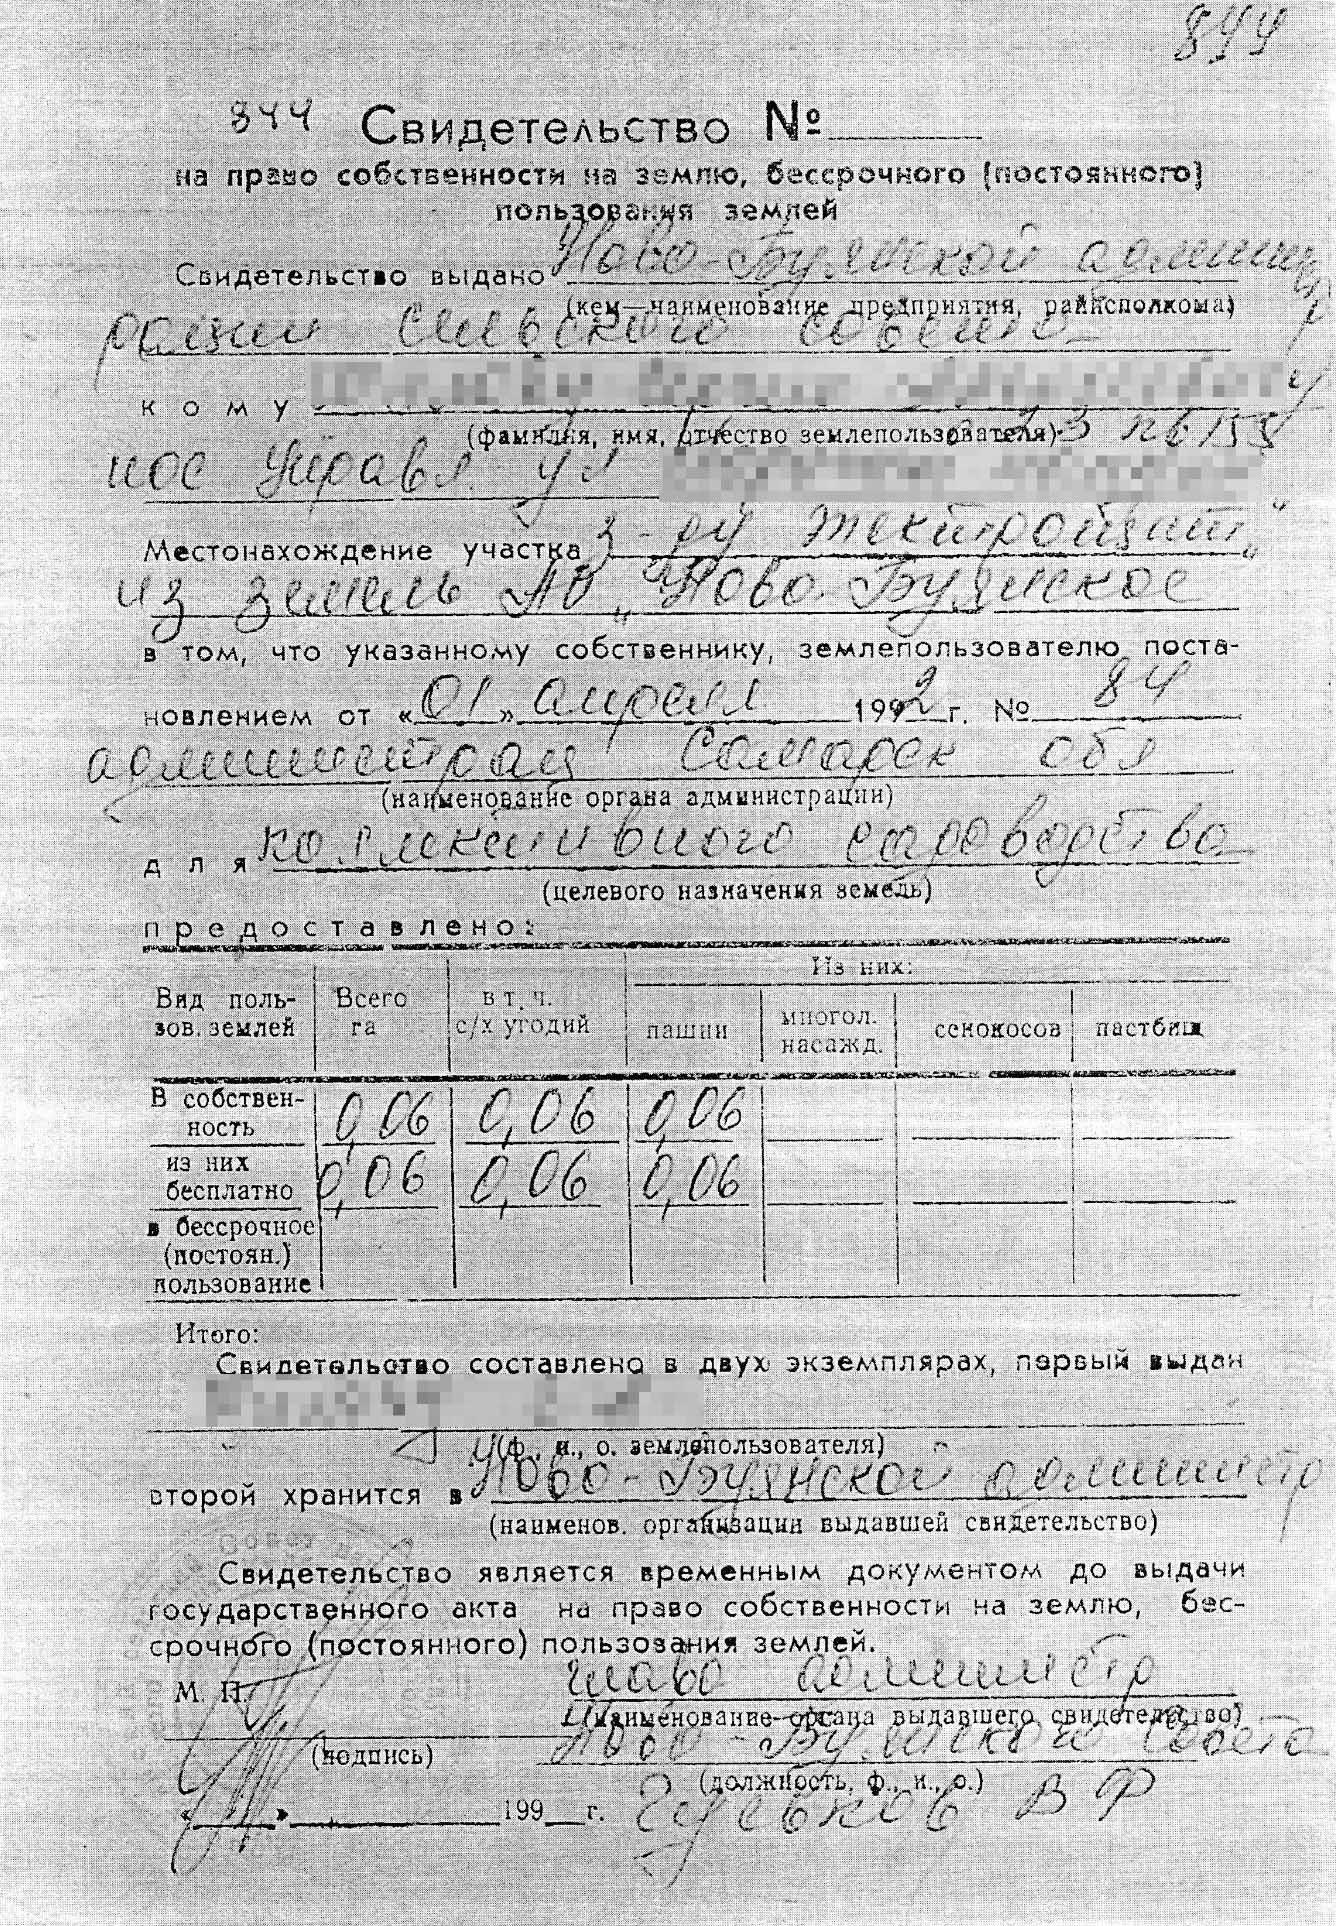 Свидетельство о праве собственности старого образца, которое мы получили в архиве администрации Красноярского района Самарской области. Оно имеет такую же силу, как и записи в ЕГРН